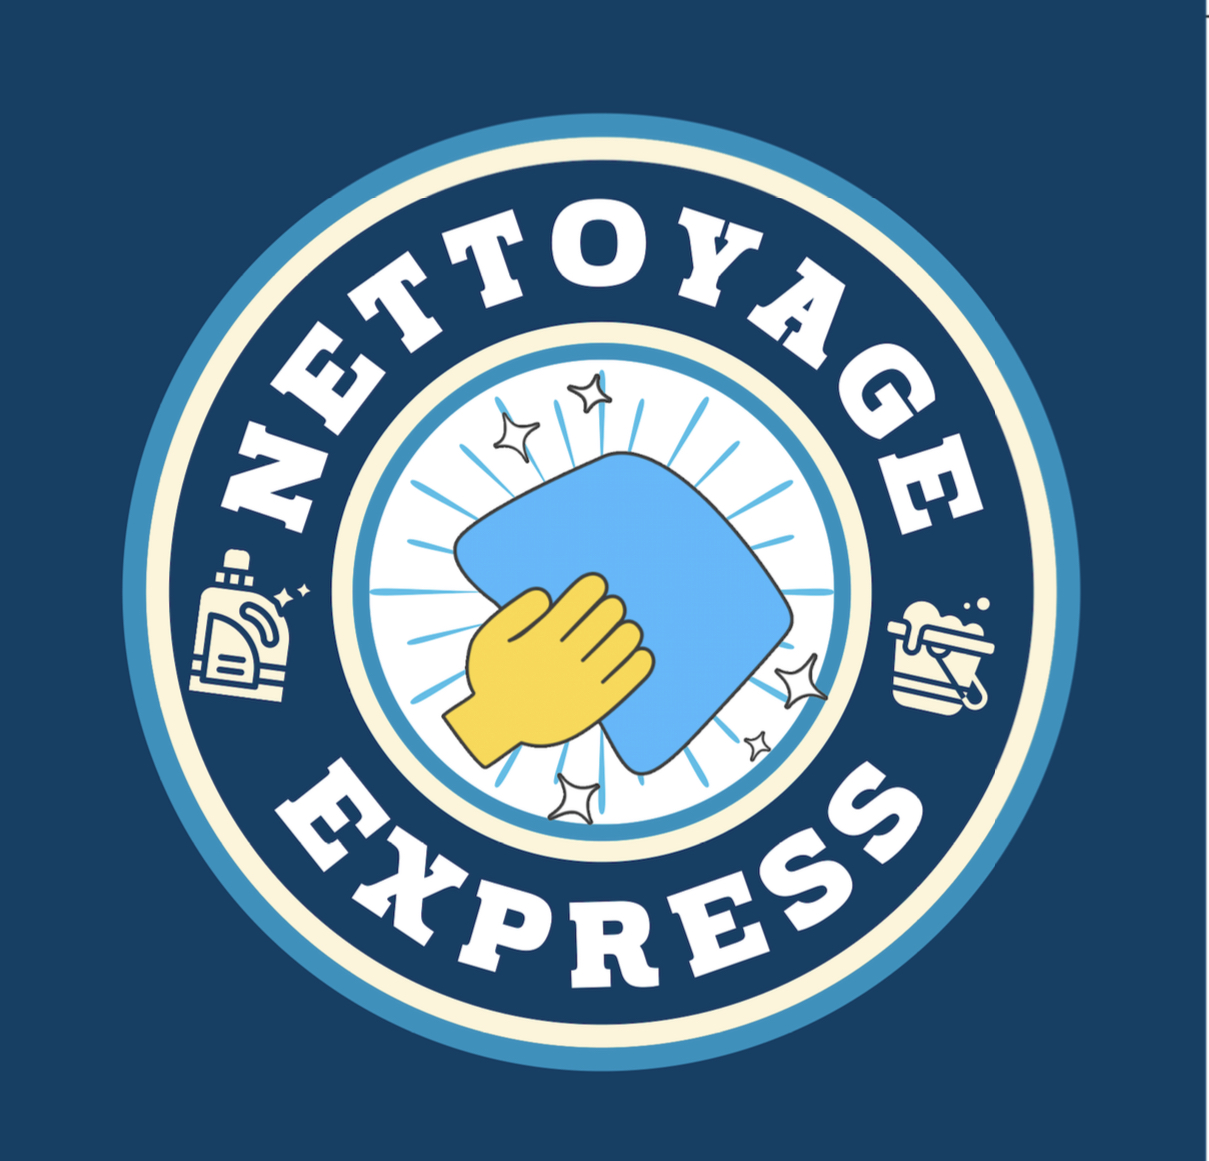 Société nettoyage express